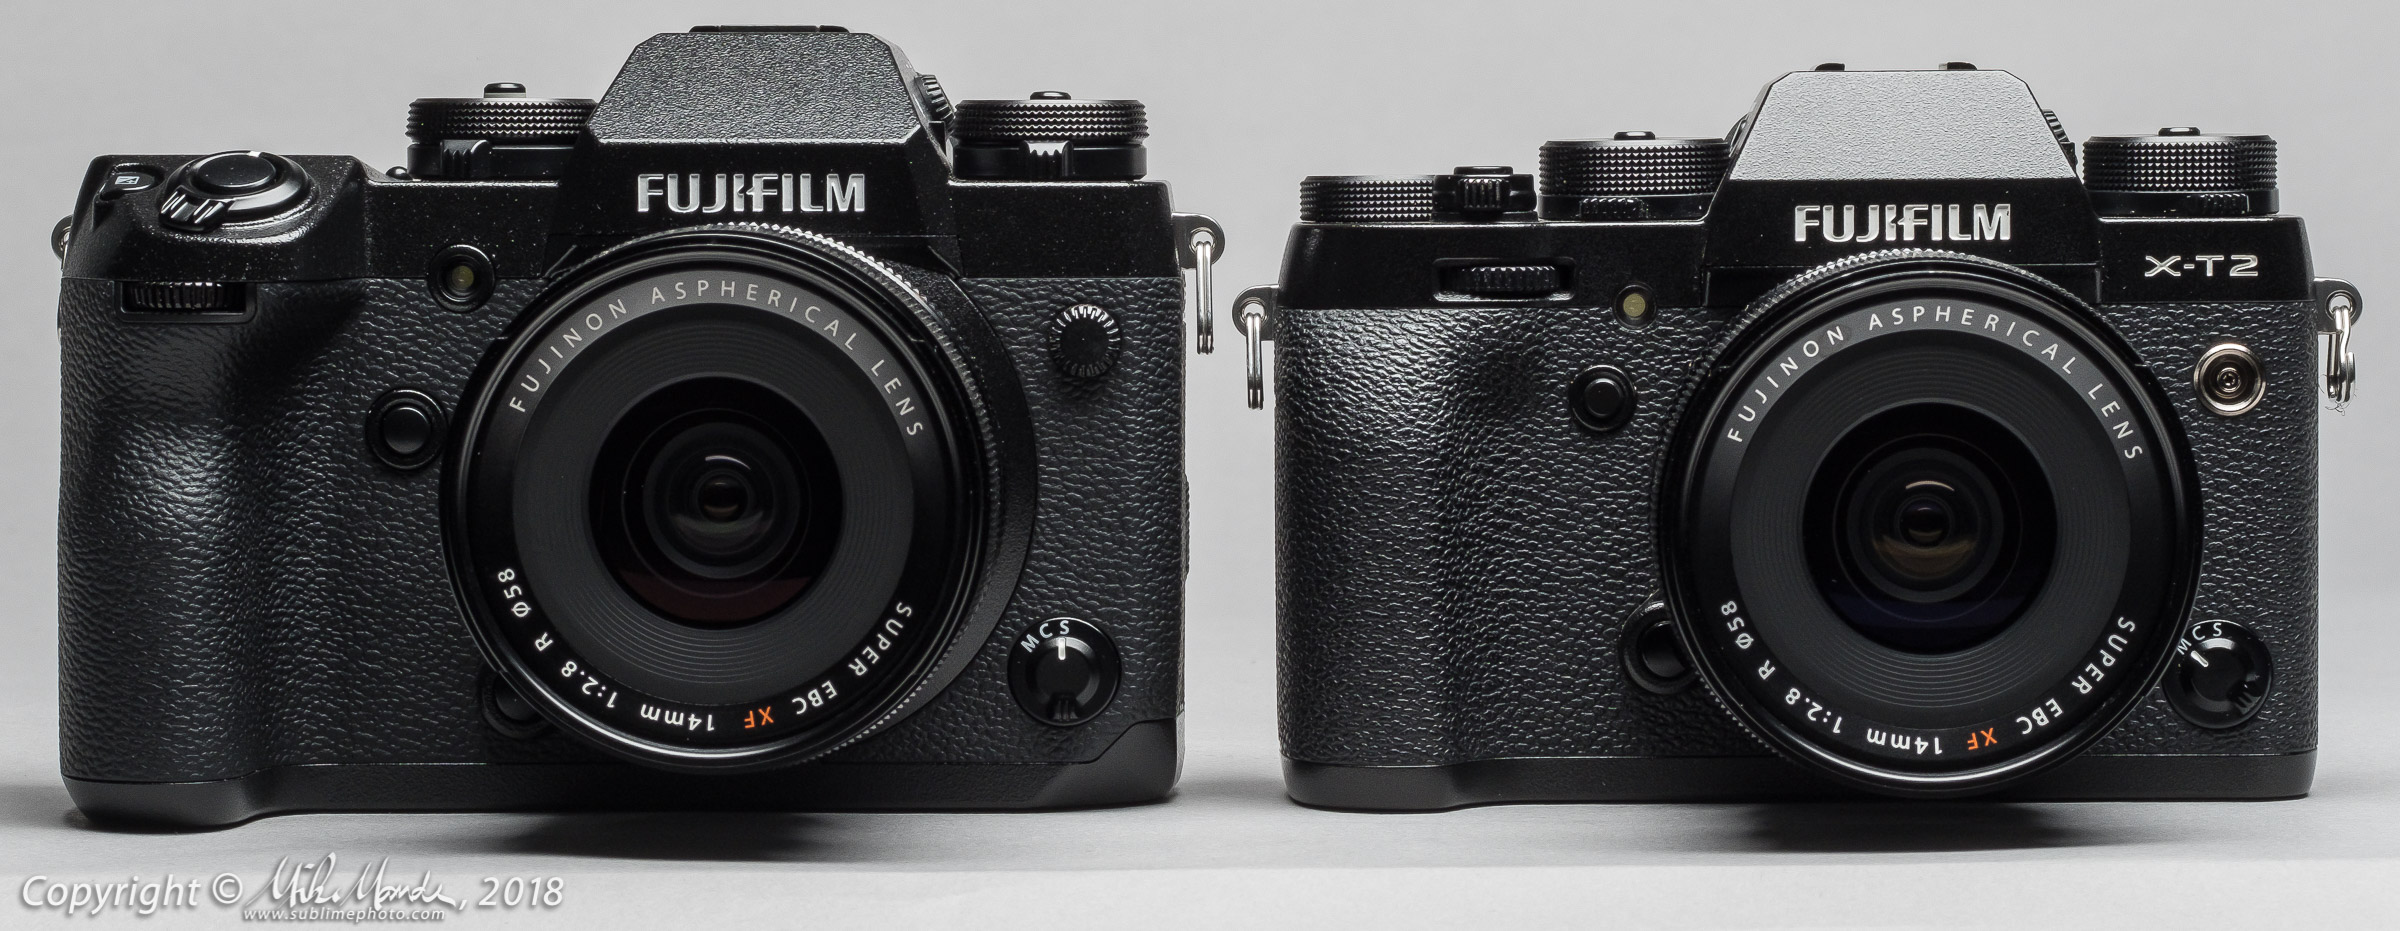 NEW! Fujifilm X-H1 – Preview – Beau Photo Supplies Inc.